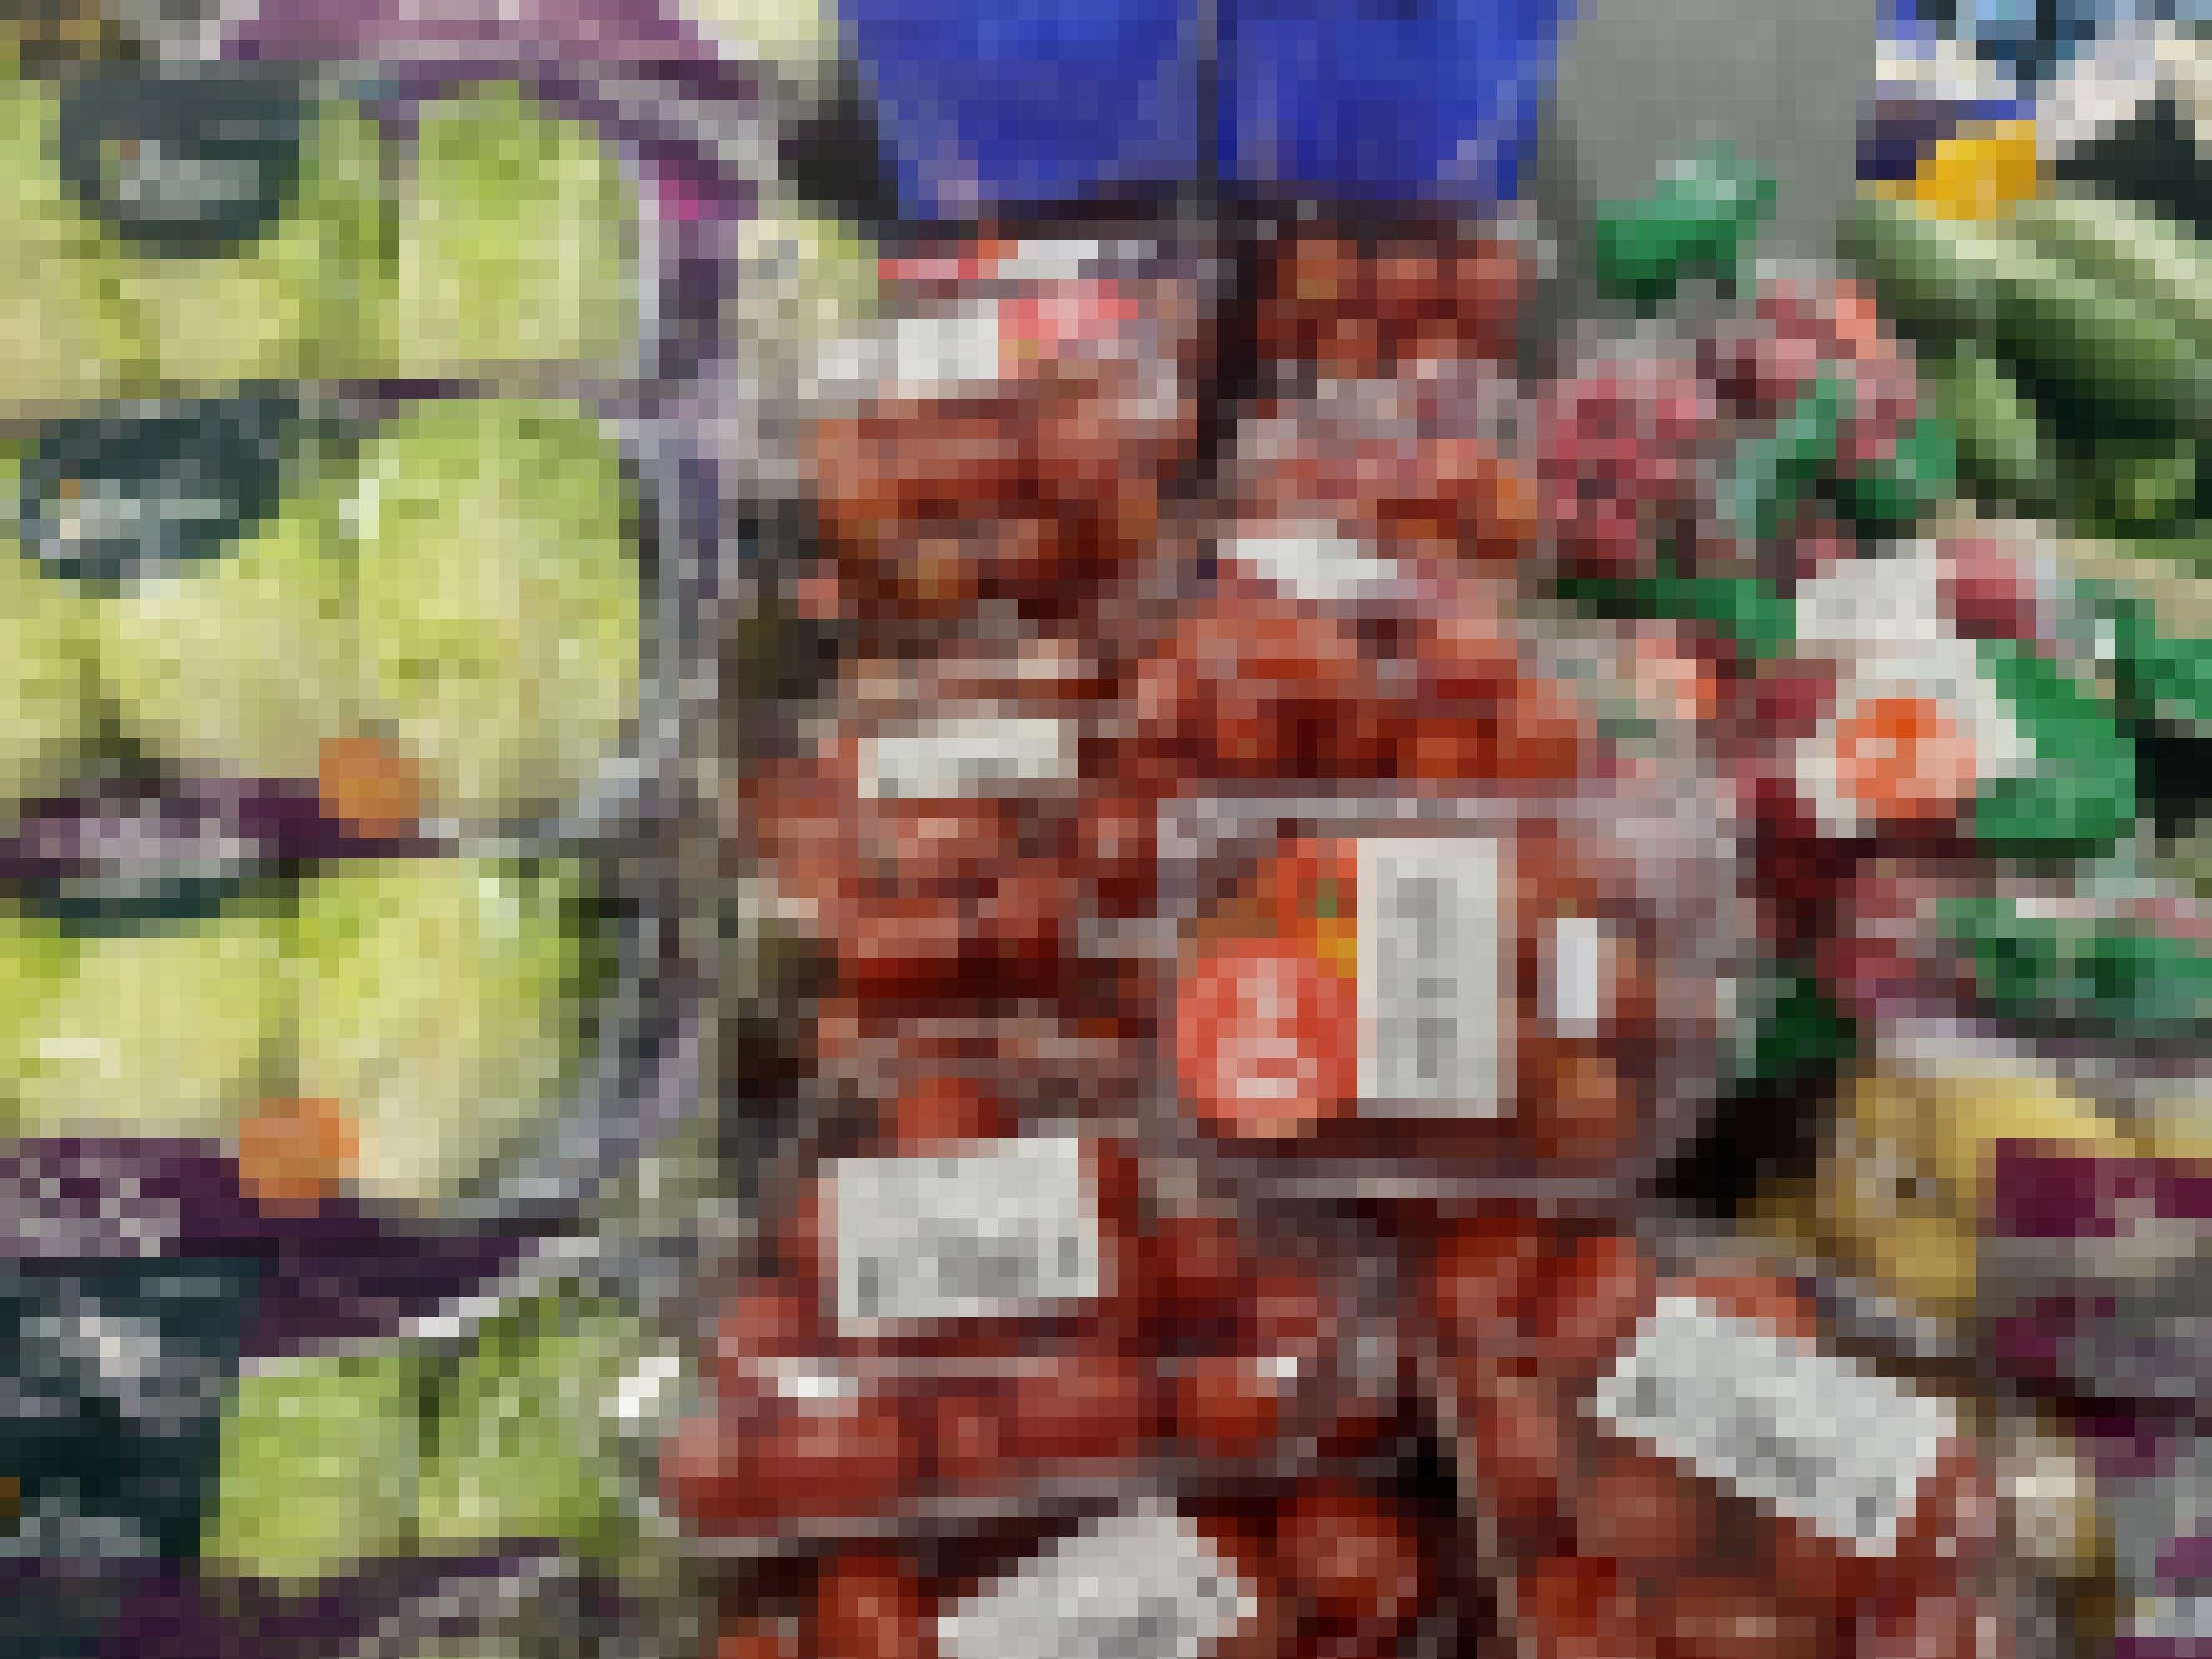 Tomaten, Salate, Kartoffeln und anderes Gemüse liegt in Plastikverpackung in einem französischen Supermarkt.